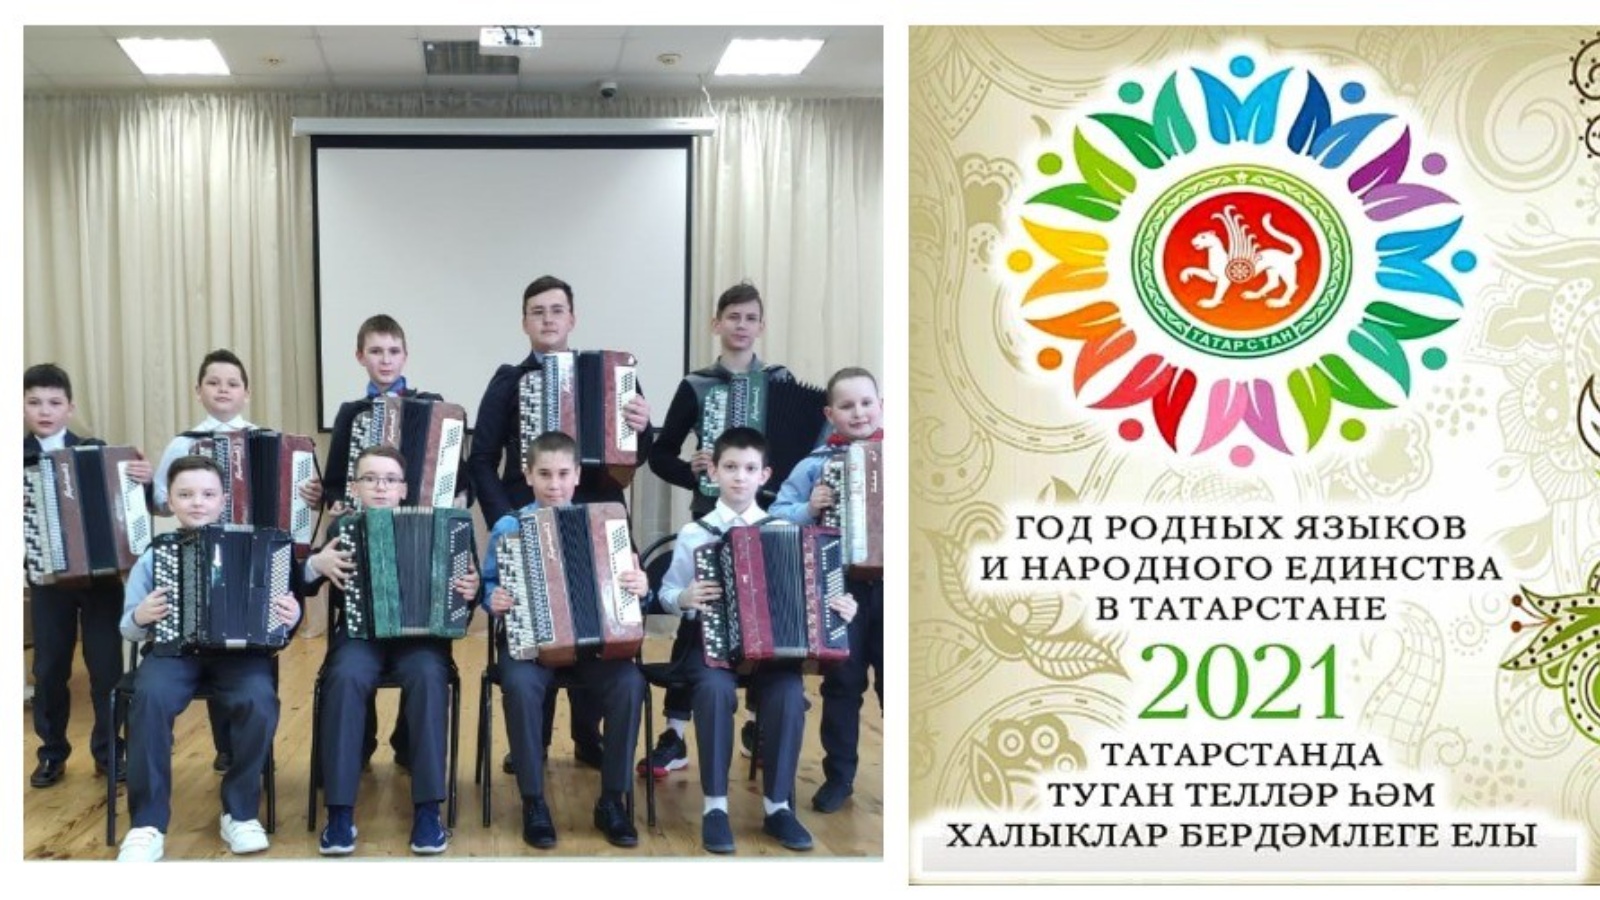 2021 Год год родных языков и народного единства в Татарстане